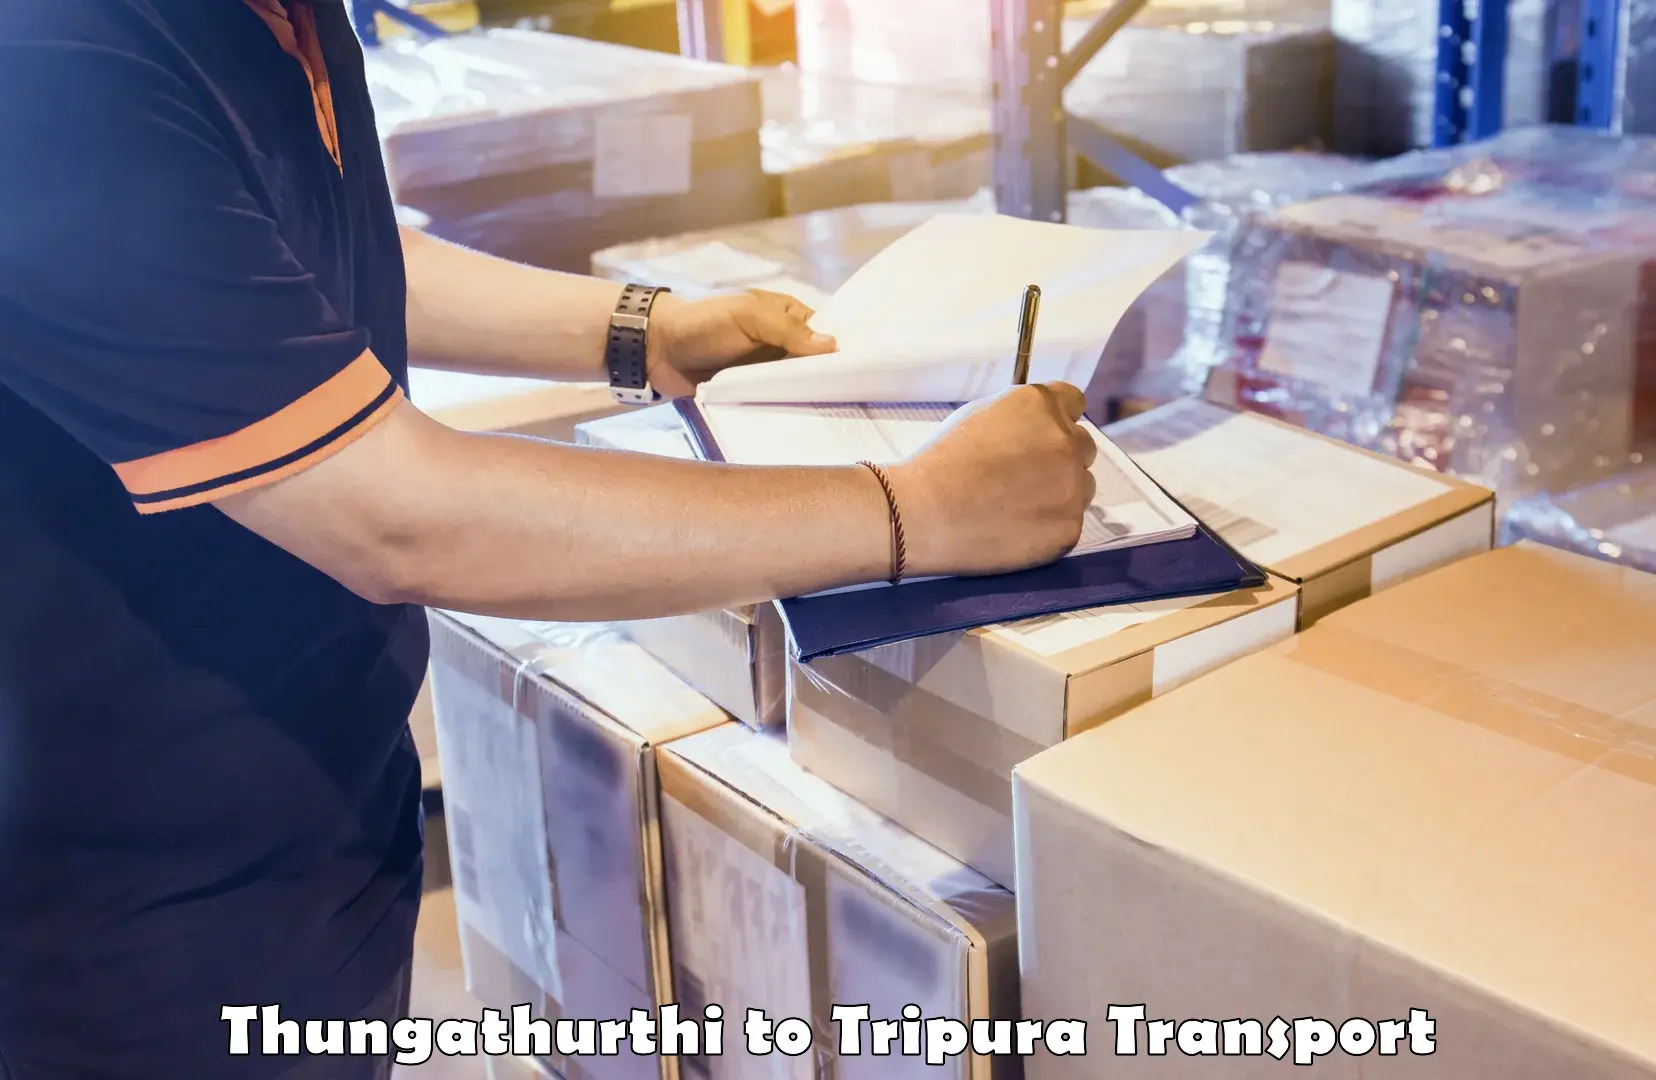 India truck logistics services Thungathurthi to Radhakishorepur